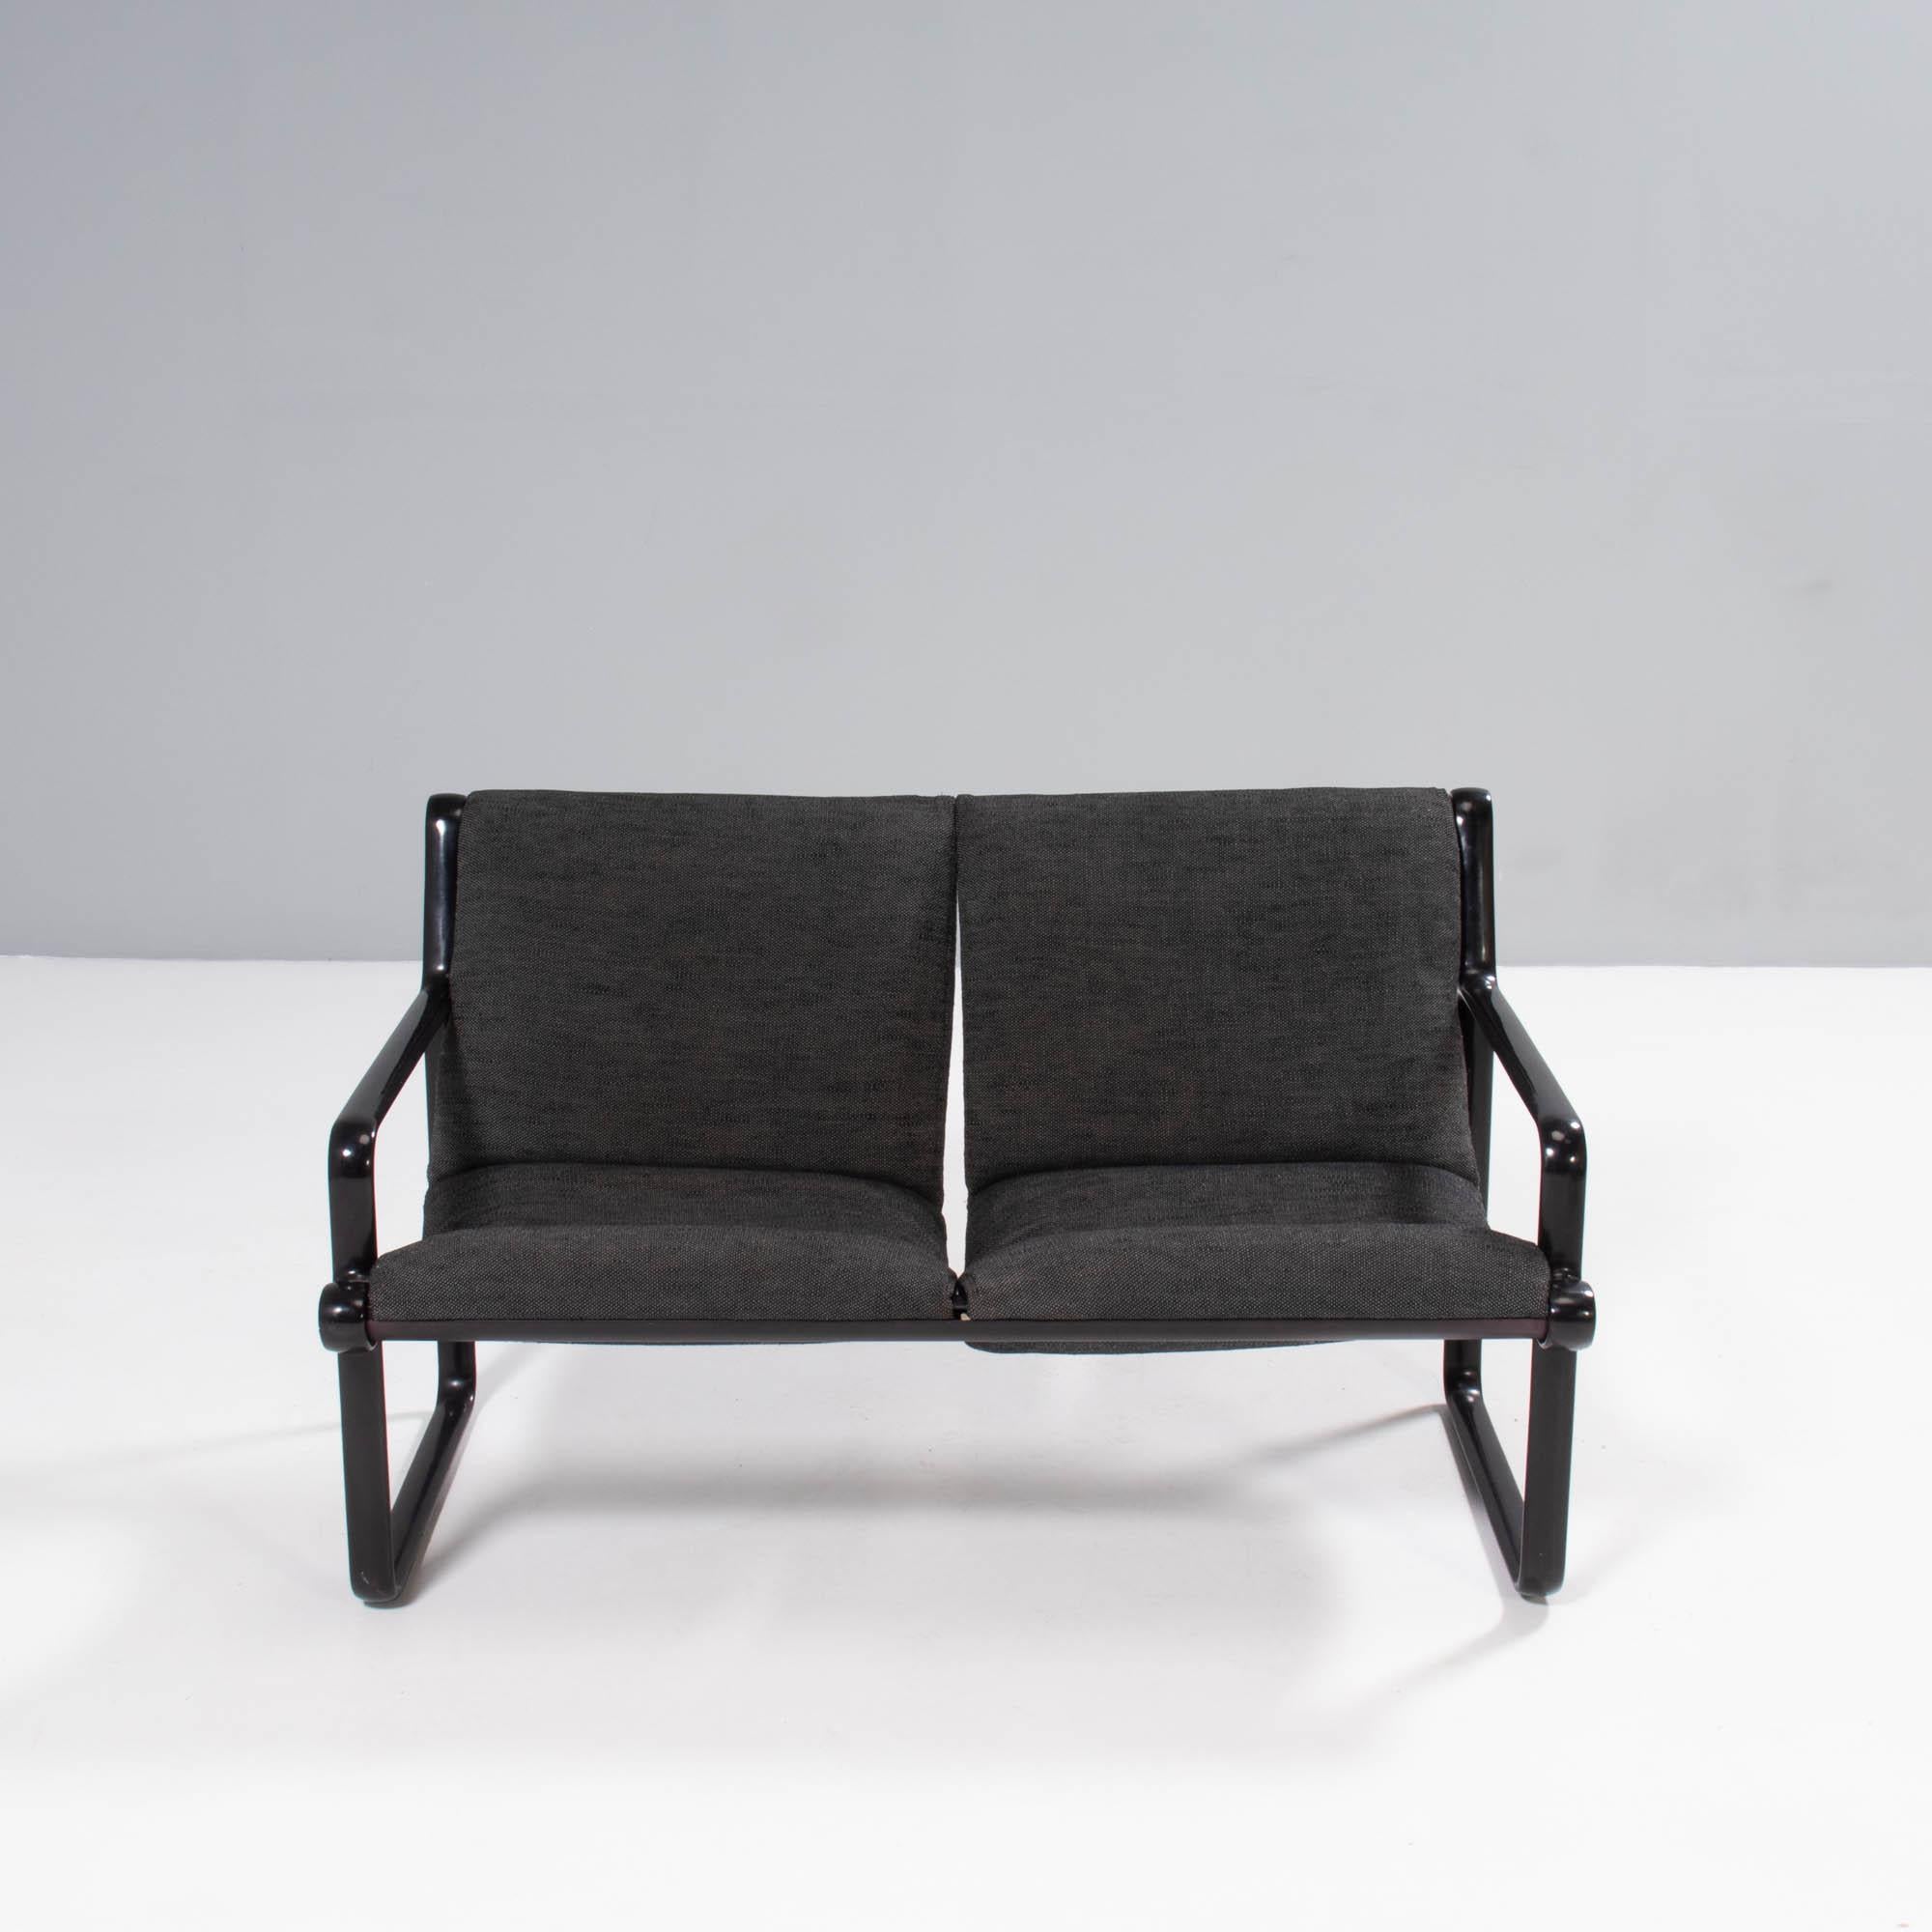 Conçu par Bruce Hannah et Andrew Ivar Morrison pour Knoll, ce canapé Sling est un exemple fantastique du design des années 1970.

Inspiré des voiliers, le canapé Sling présente une structure métallique de style industriel avec des accoudoirs dans